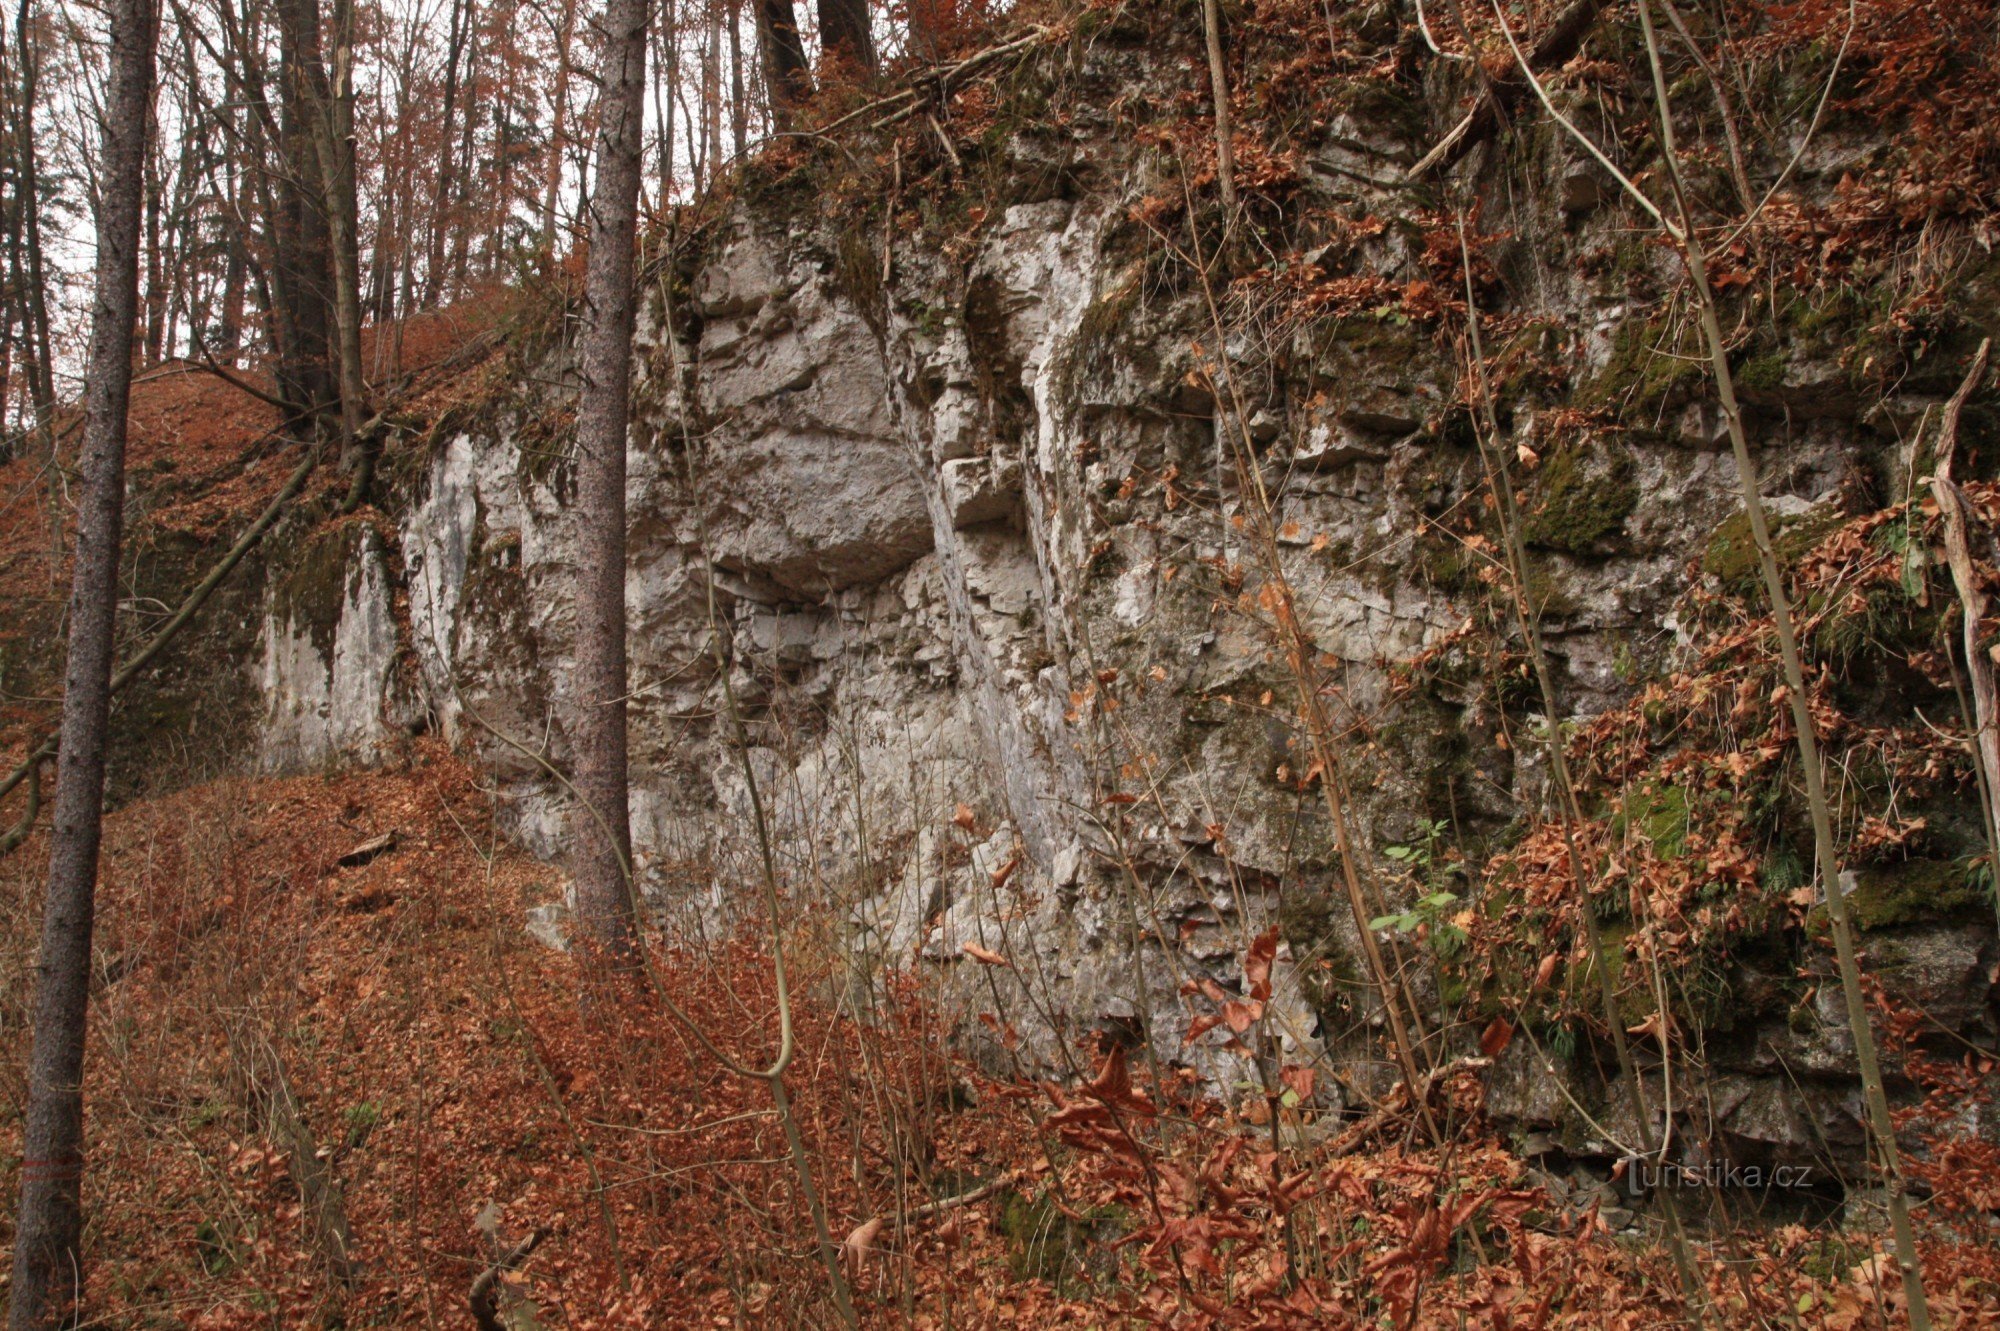 Rocks in Vaječník, in the upper part the entrance to the cave in Vaječník